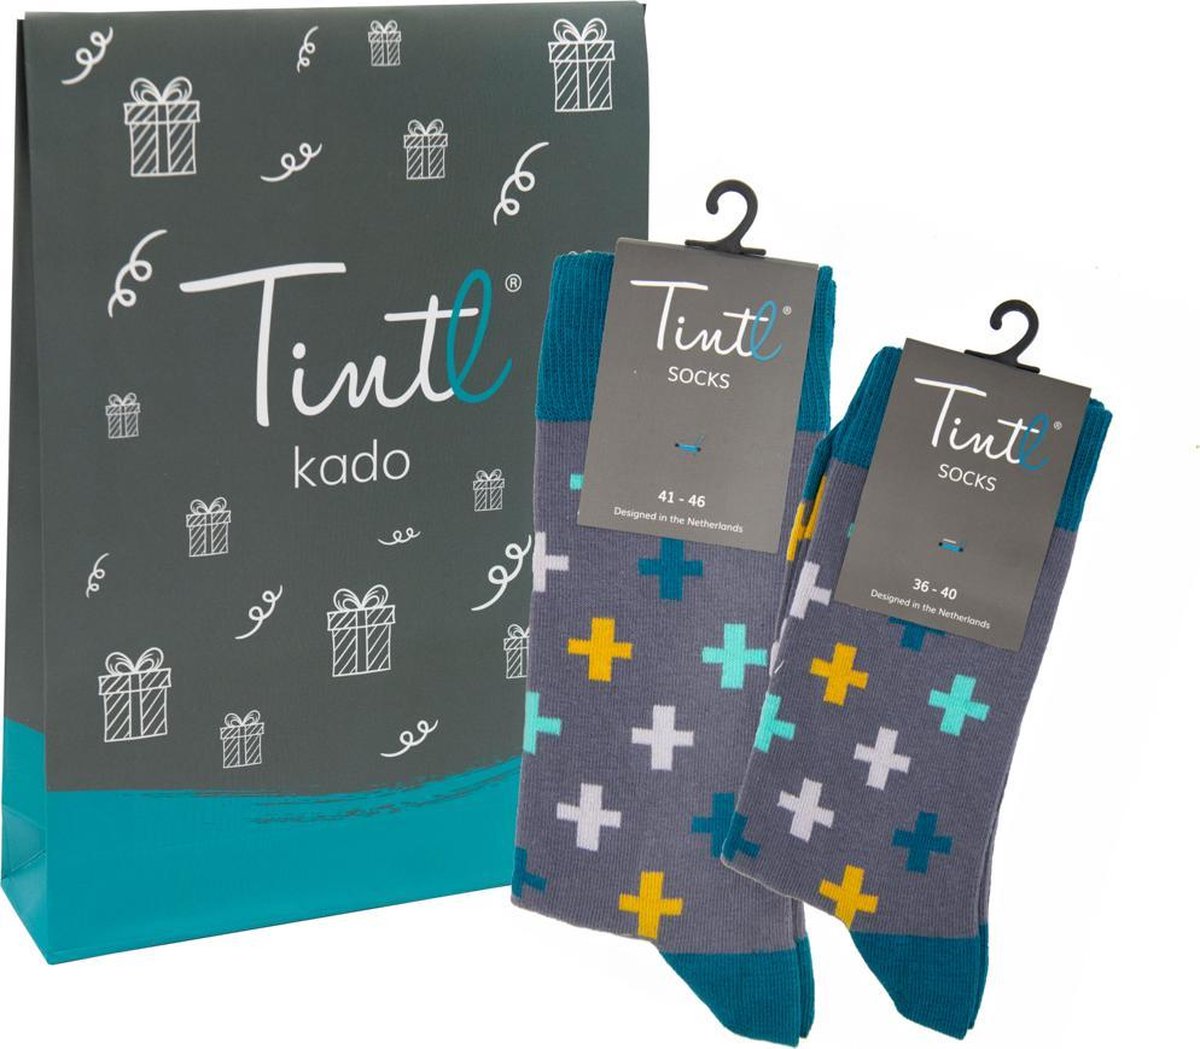 Tintl socks geschenkset unisex sokken | Twinning - Cross (maat 36-40 & 41-46)